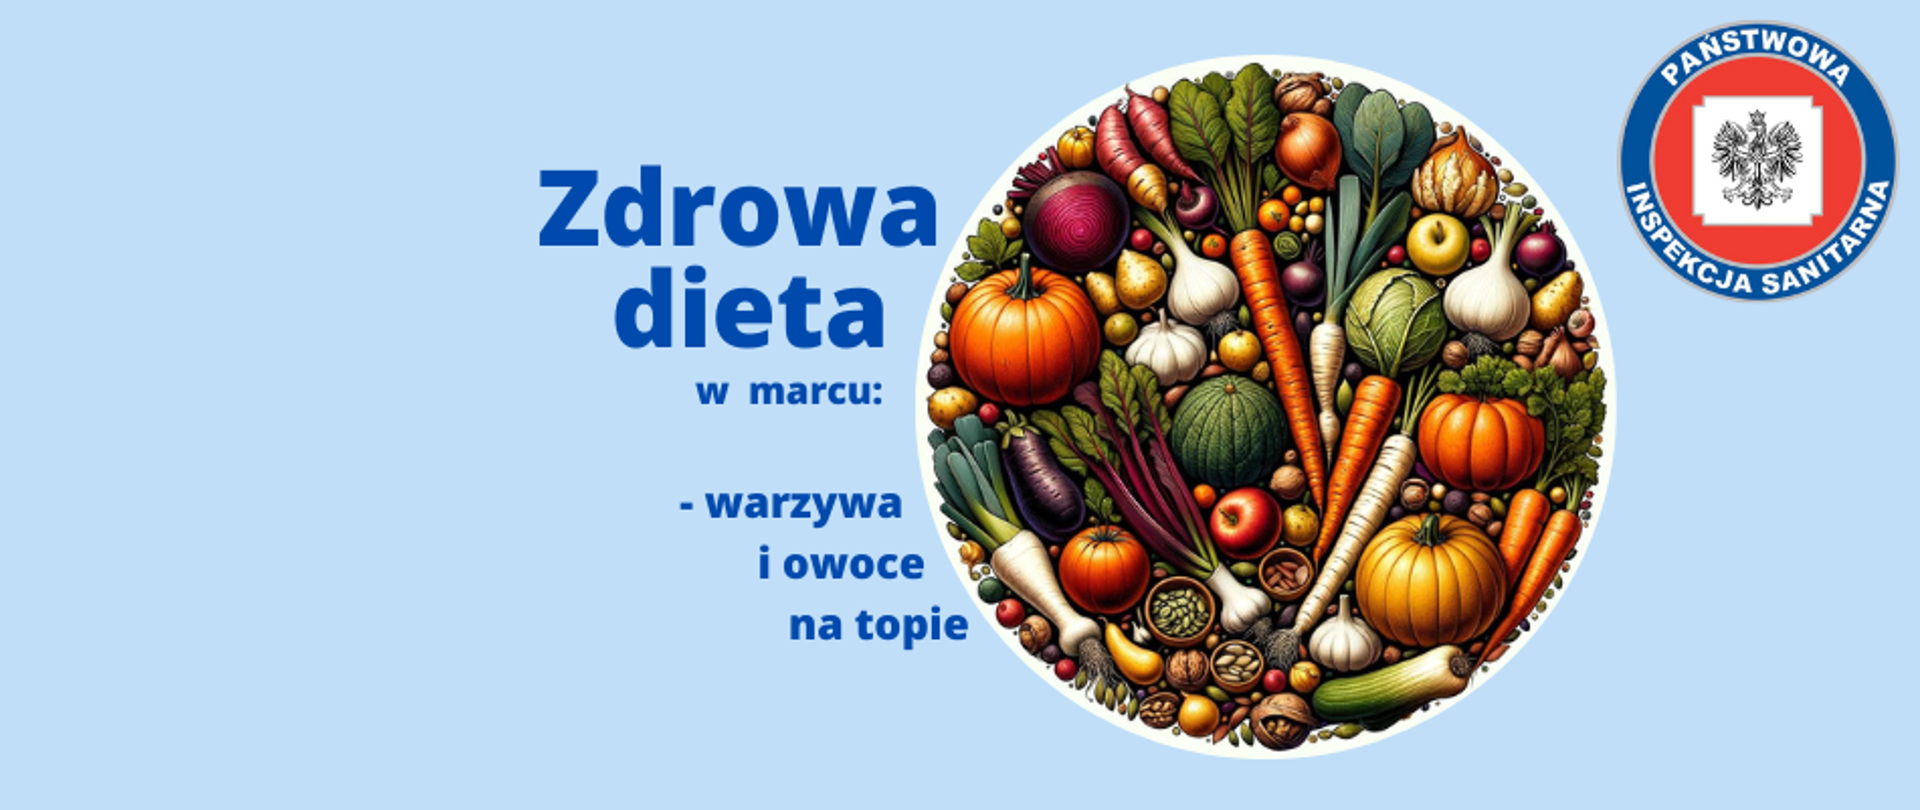 Baner przedstawiający tytuł artykułu z hasłem " Zdrowa dieta w marcu: warzywa i owoce na topie - LOGO". Po prawej stronie znajduje się okrągłe zdjęcie z licznymi warzywami owocami oraz pestkami i orzechami spożywanymi najkorzystniej w marcu. W prawym górnym rogu umieszczono logo Państwowej Inspekcji Sanitarnej. Całość na niebieskim tle pasującym do kolorystyki strony internetowej.